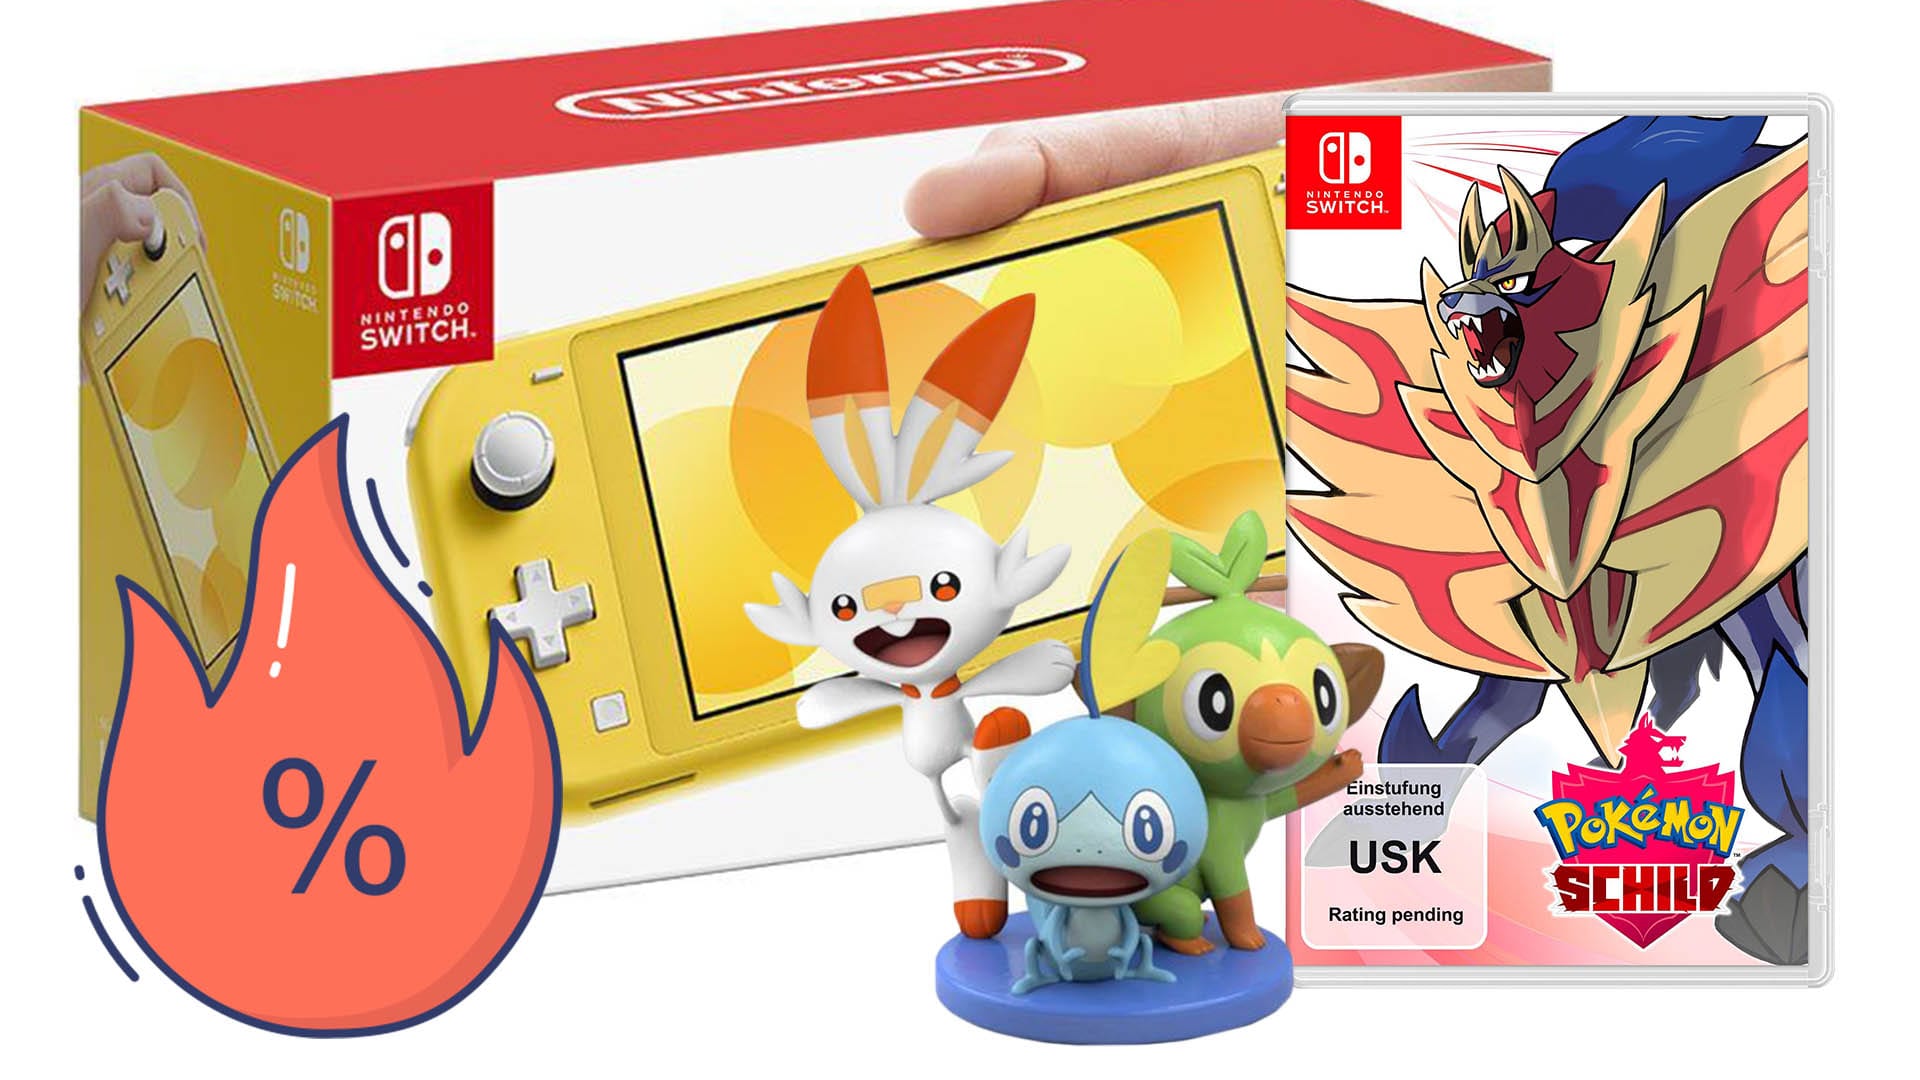 Nintendo Switch Lite jetzt Schild Euro, 229 sparen bei für Otto! Pokémon günstige und